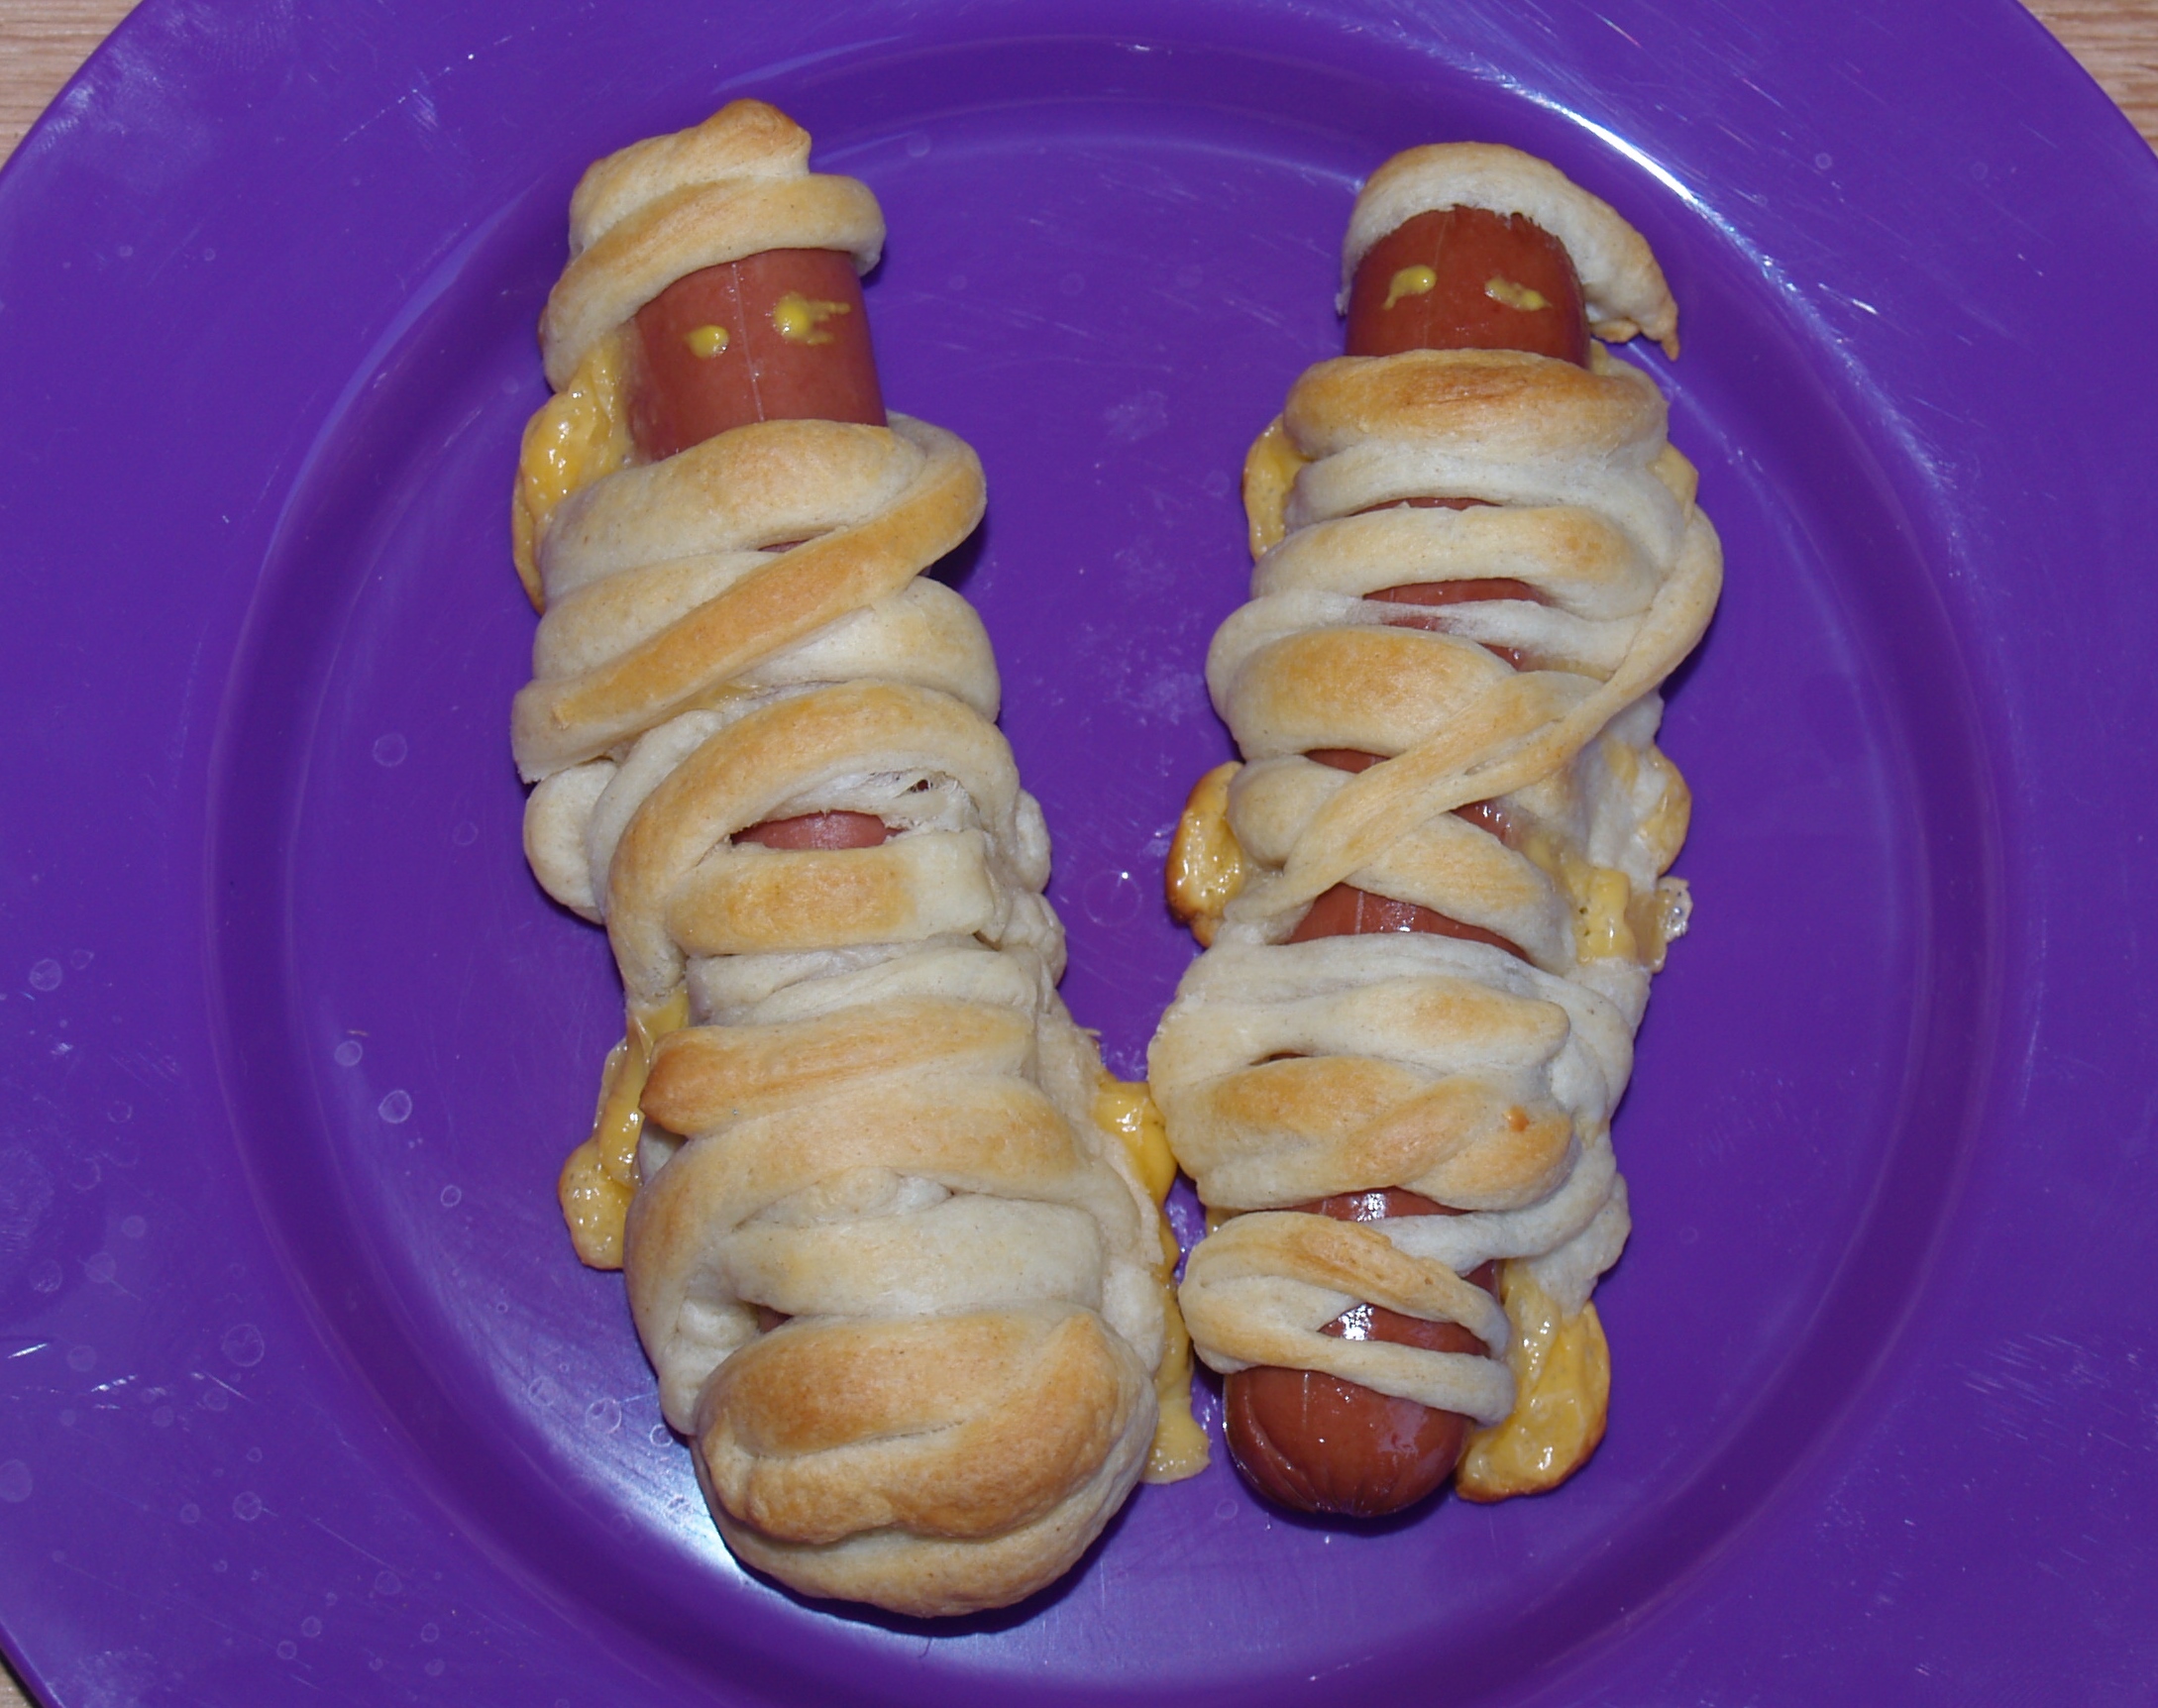 Hot dog Mummies from Kelli's Kitchen